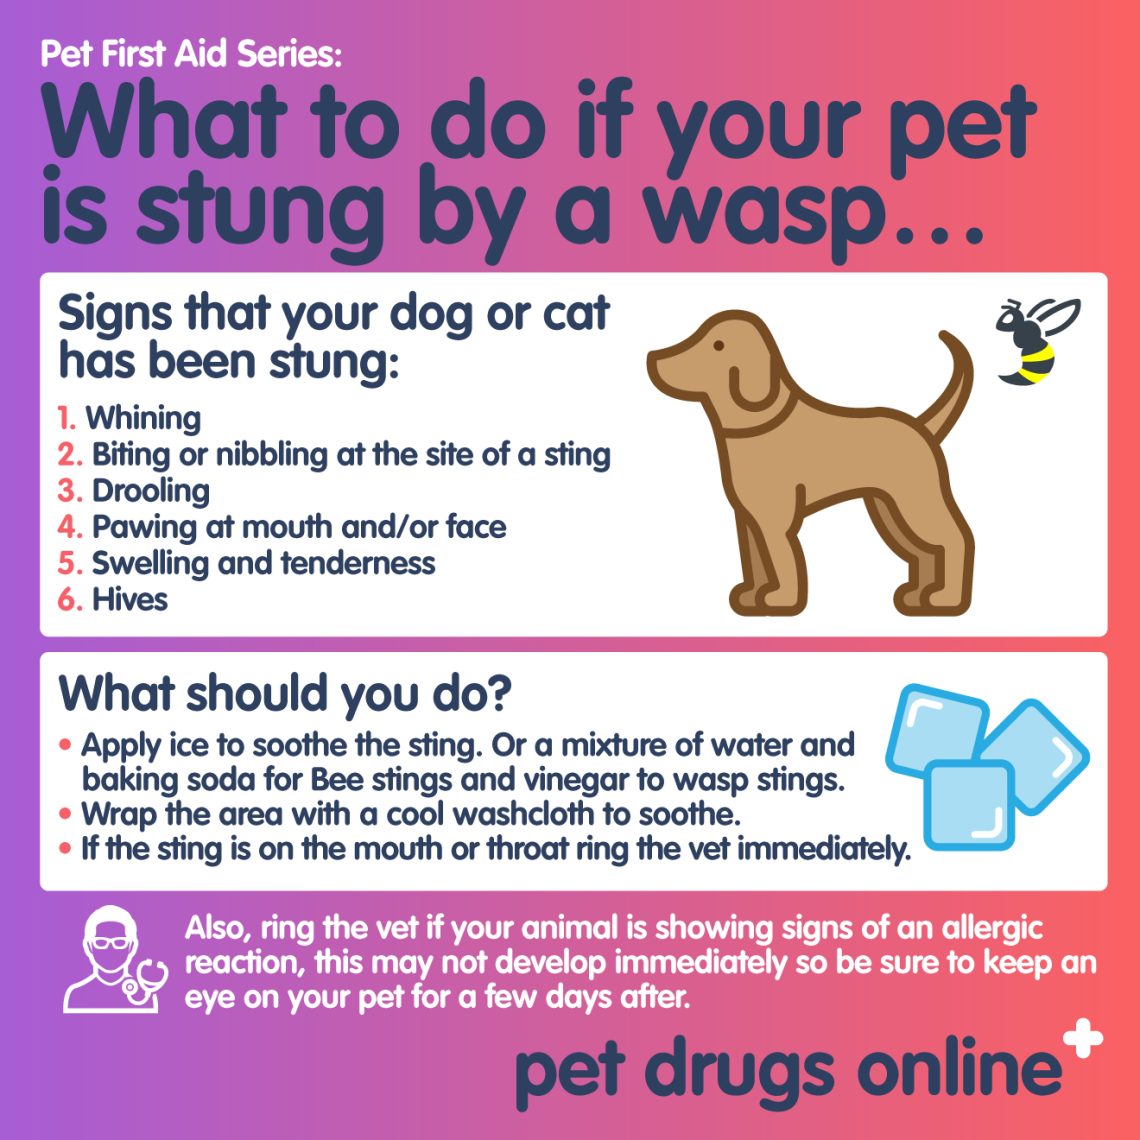 What to do if a dog is bitten by a bee or wasp?